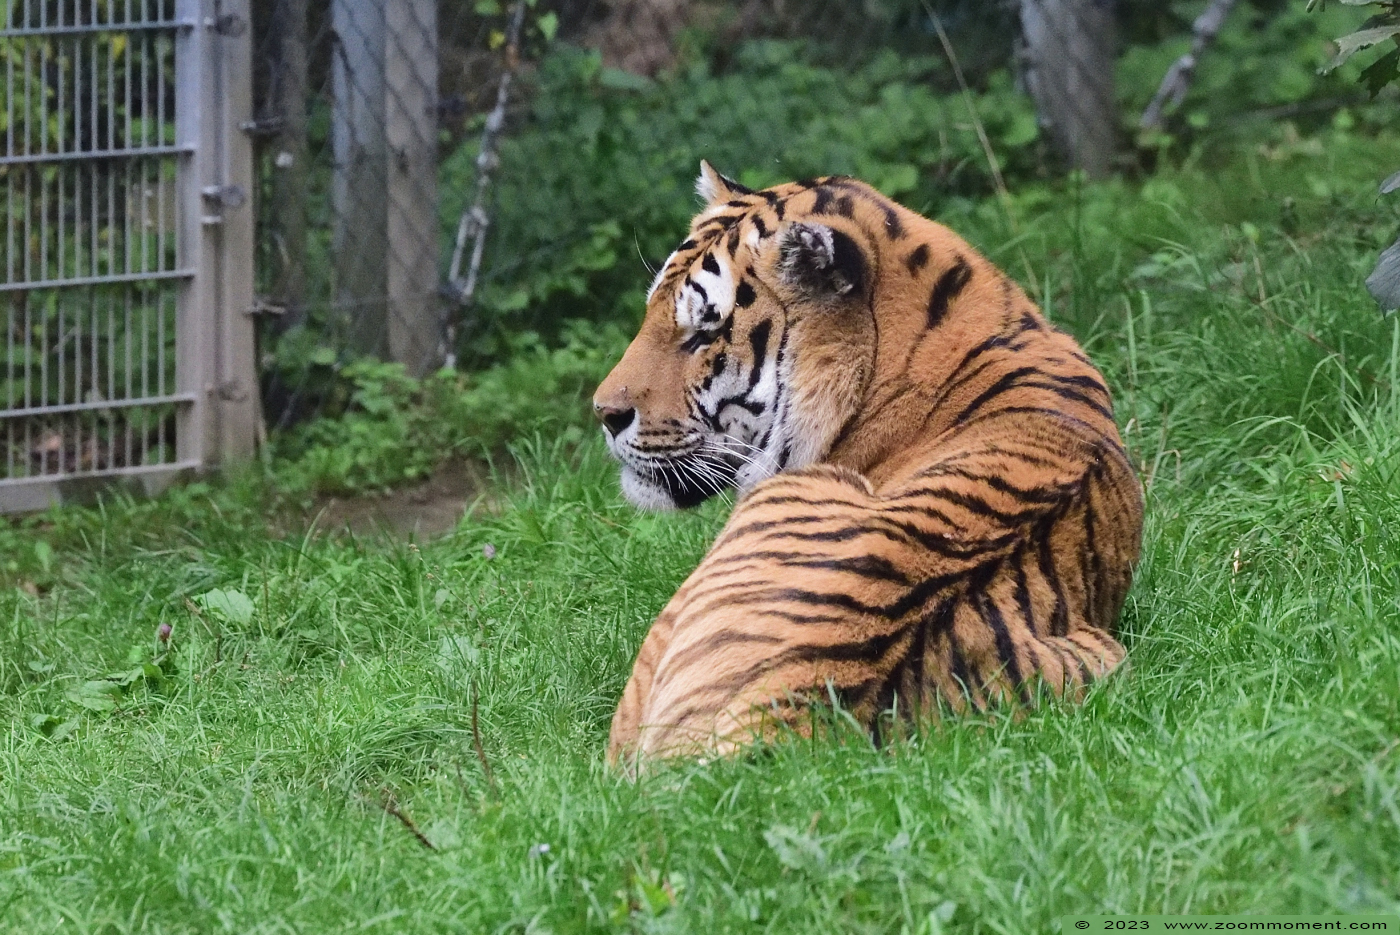 Siberische tijger ( Panthera tigris altaica ) Siberian tiger
Trefwoorden: Neuwied Germany Siberische tijger Panthera tigris altaica Siberian tiger